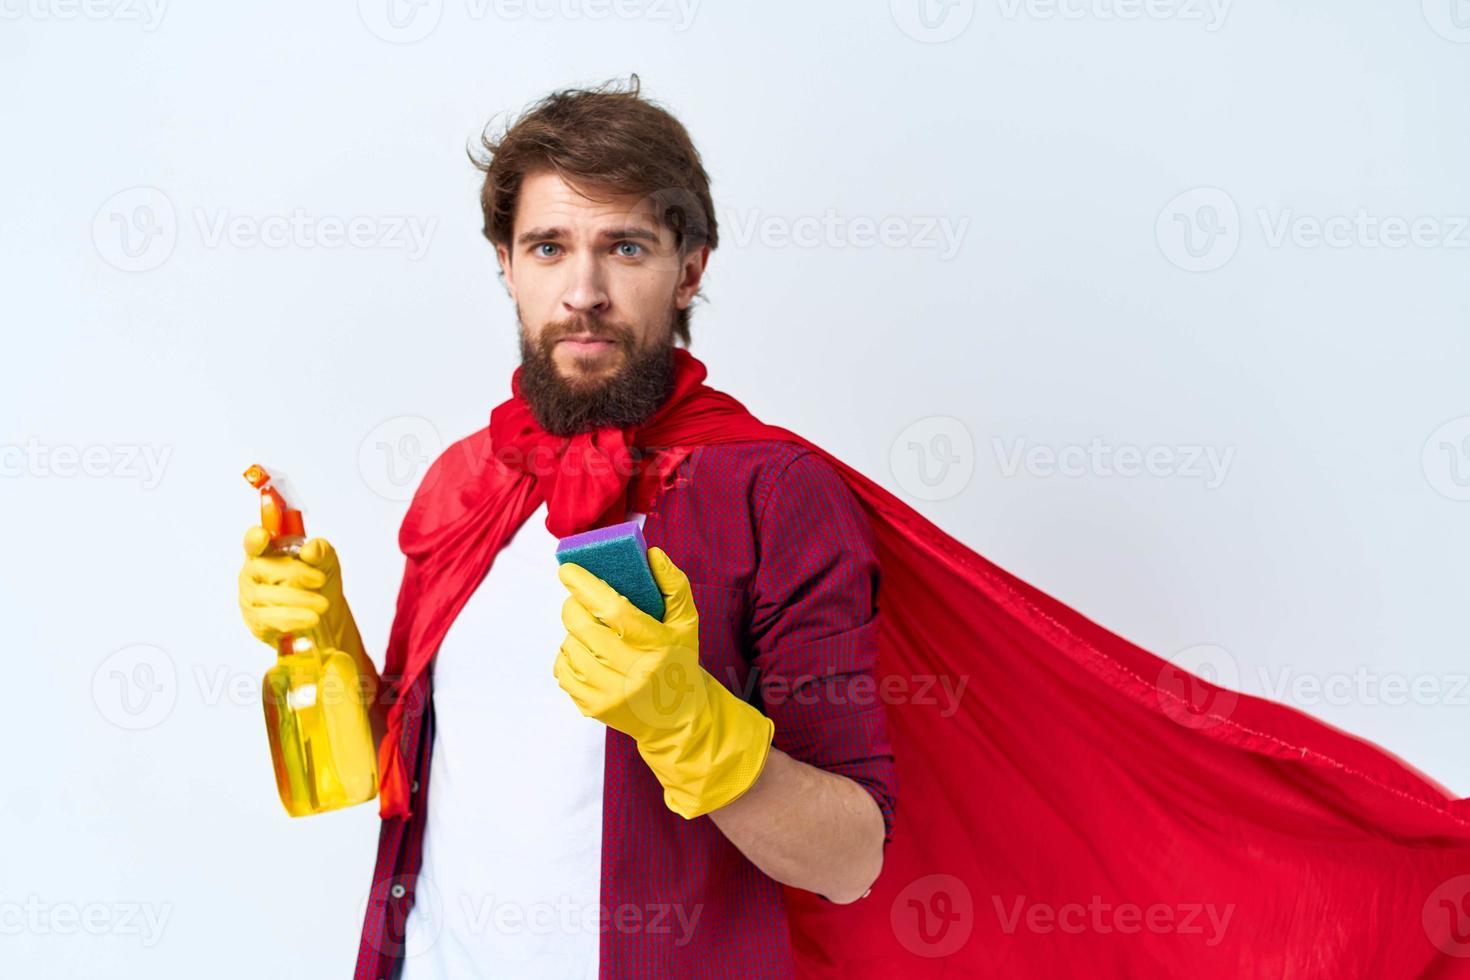 hombre en rojo impermeable limpieza suministros tareas del hogar Servicio profesional foto